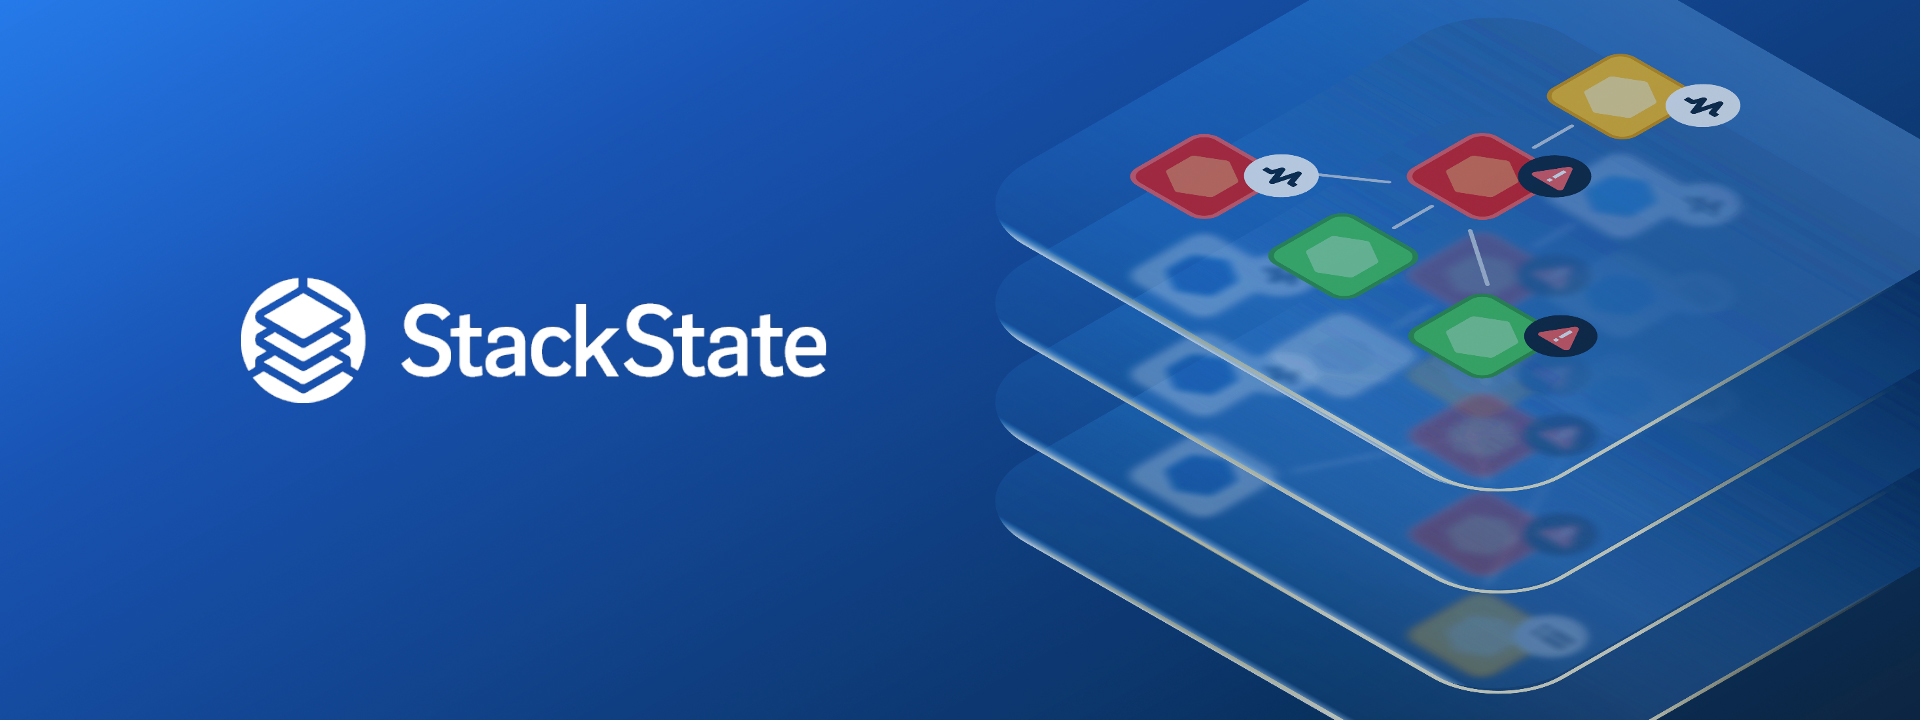 Presentation Design for StackState